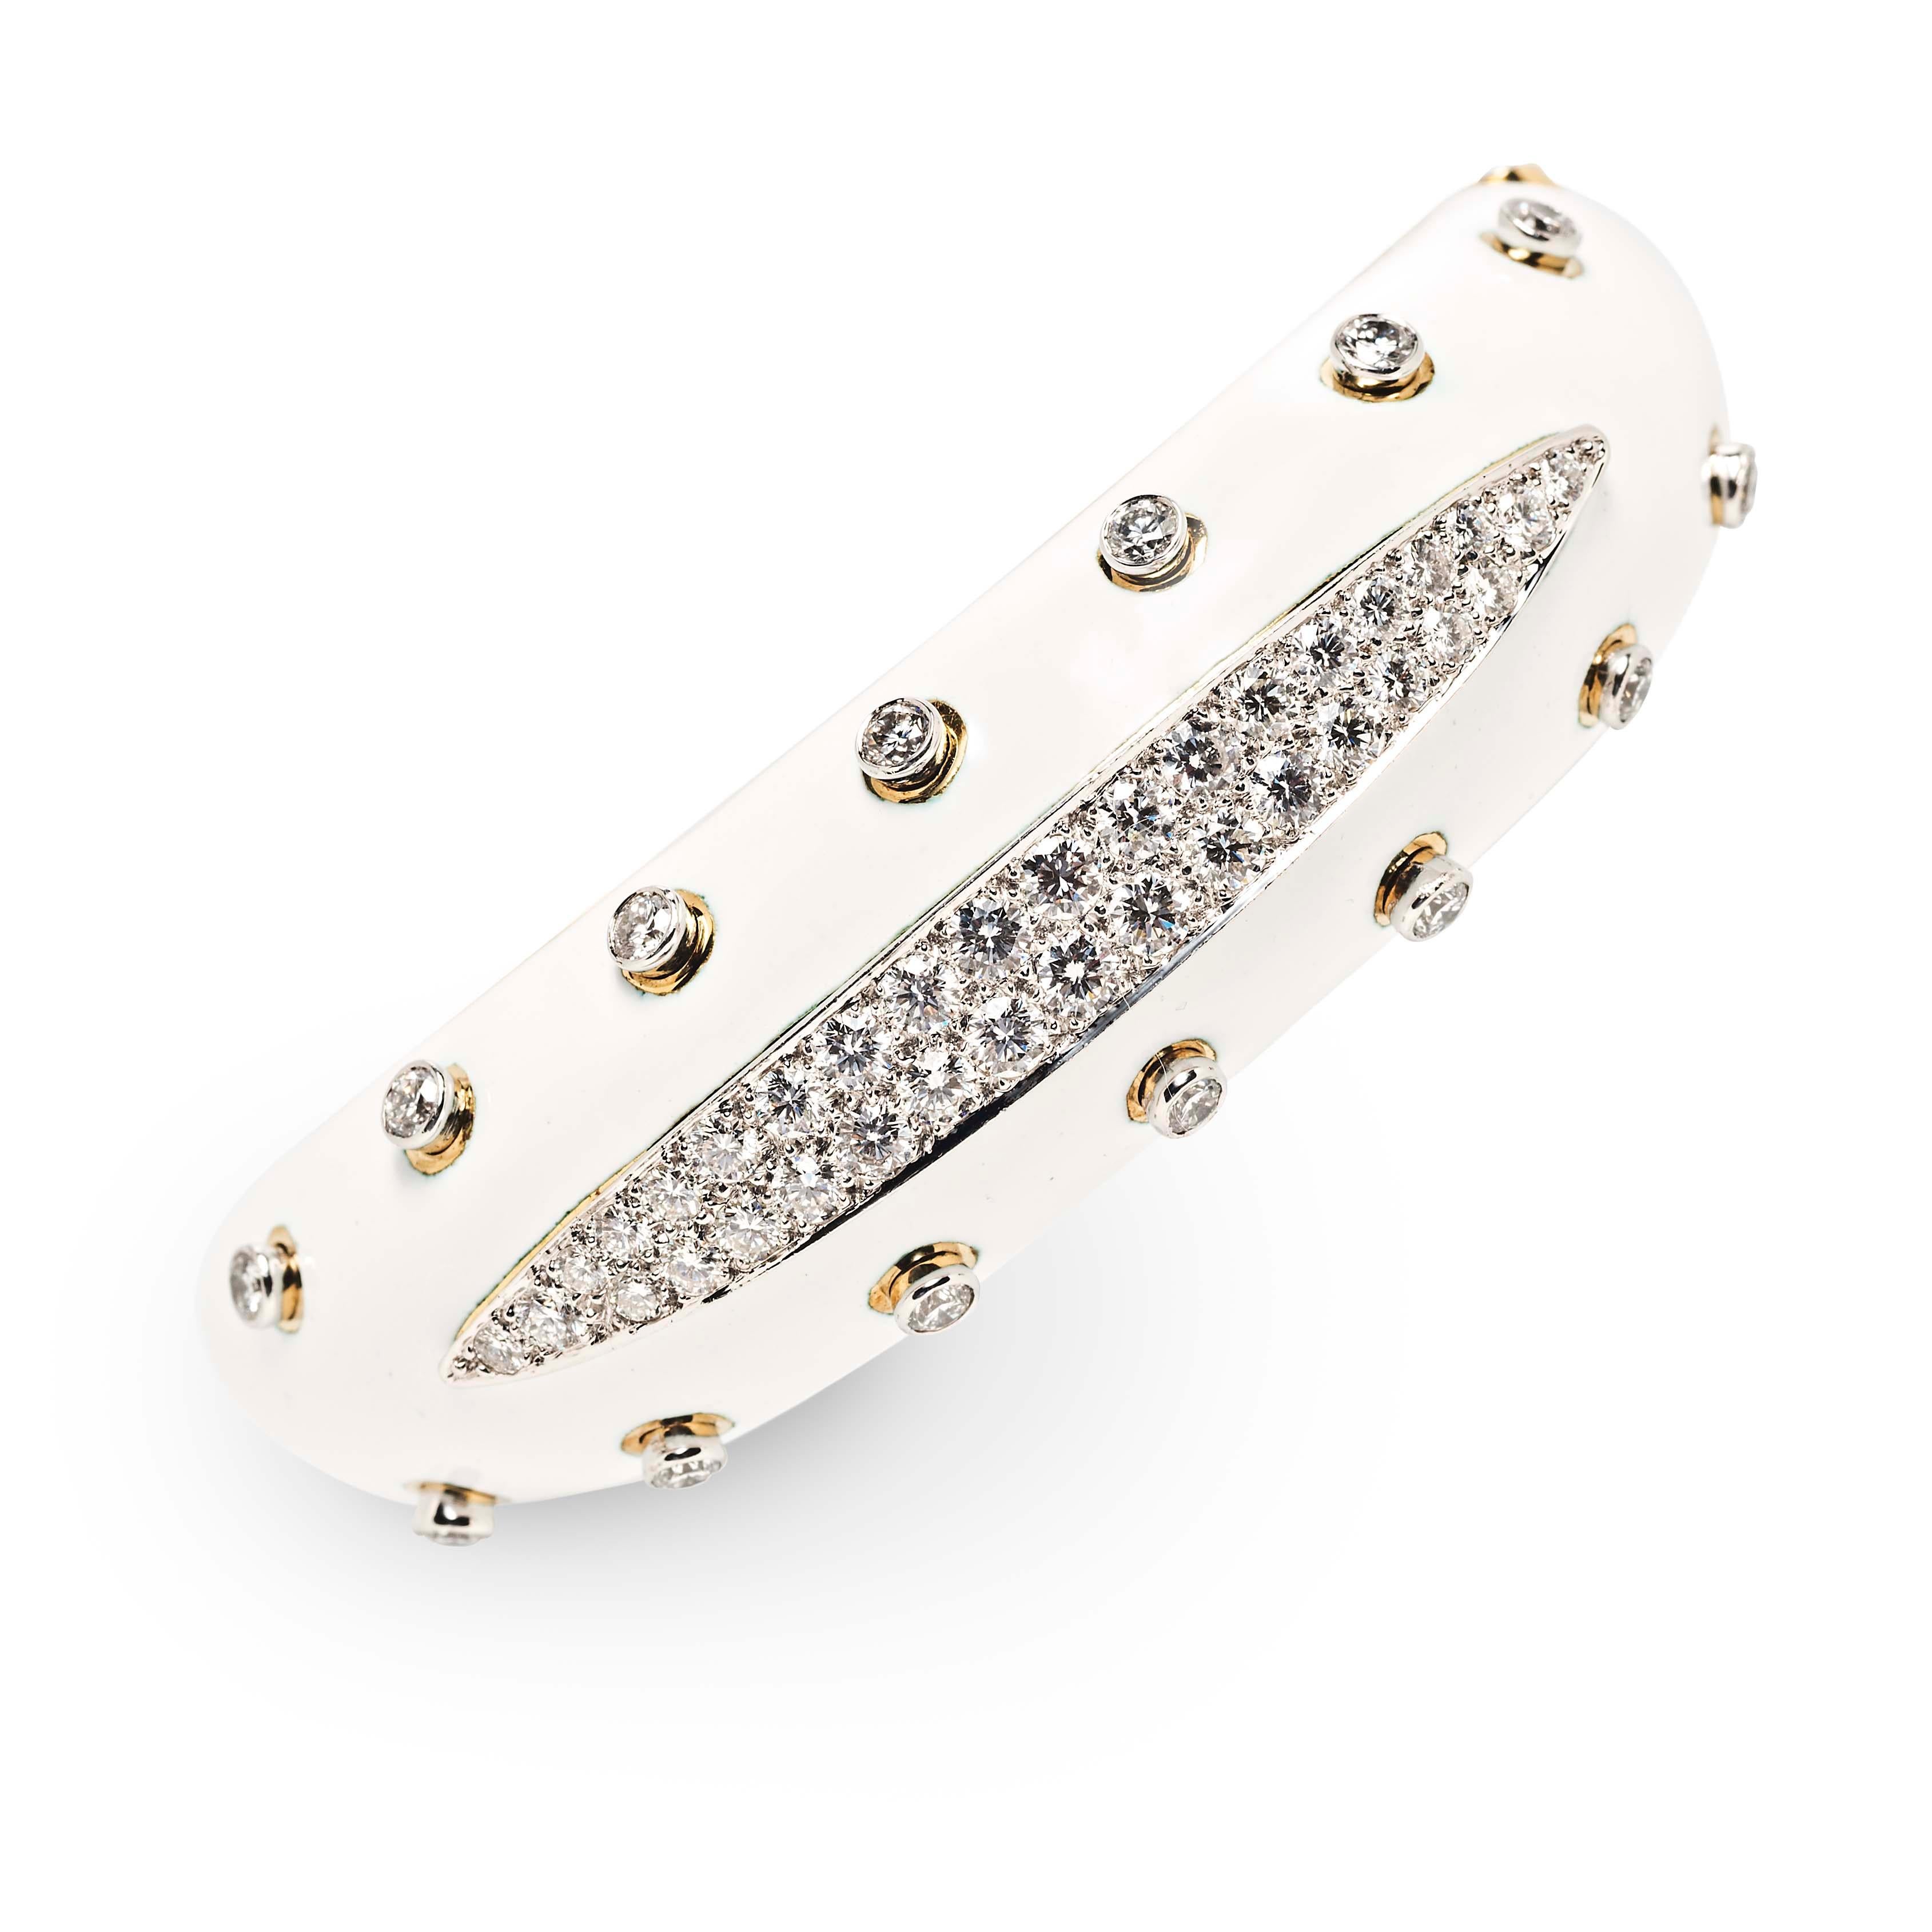 Der Slice Cuff von David Webb ist die ultimative Kombination aus klassischem Chic und vollendetem Glamour. Eine gerillte Linie aus pavé-gefassten Diamanten, die durch Diamantspitzen hervorgehoben wird, ist auf einem Grund aus weißer Emaille gefasst.